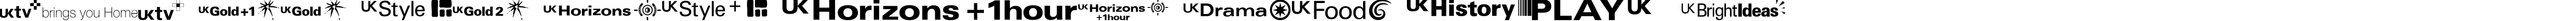 Пример написания английского алфавита шрифтом UKtv Family Logos